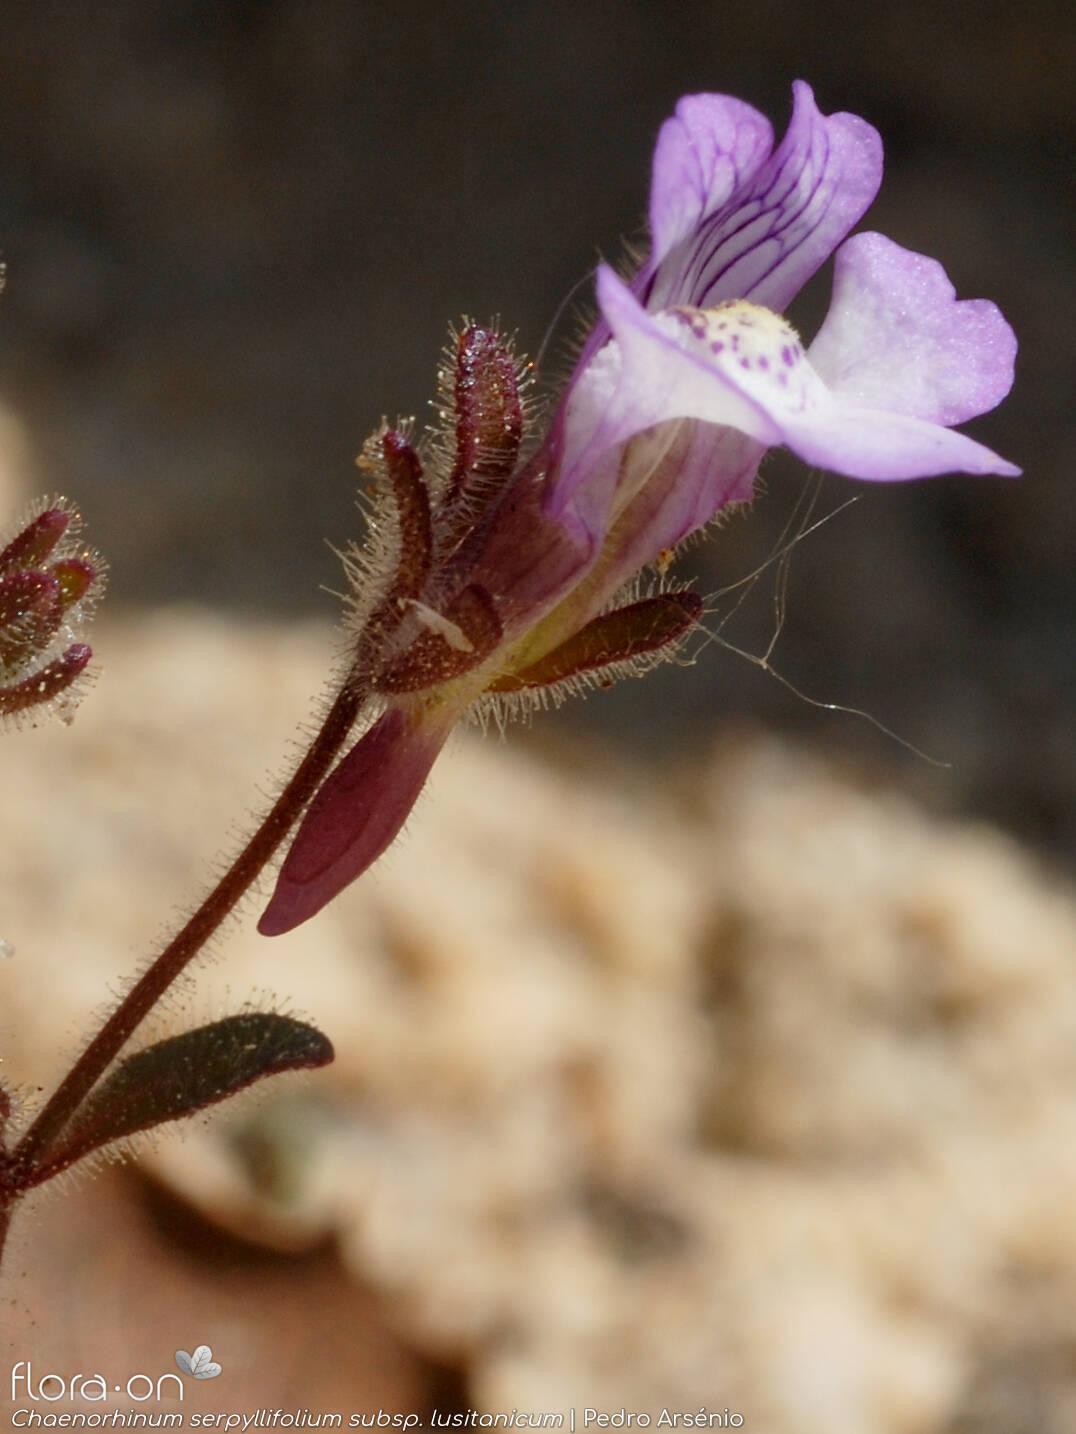 Chaenorhinum serpyllifolium lusitanicum - Flor (close-up) | Pedro Arsénio; CC BY-NC 4.0